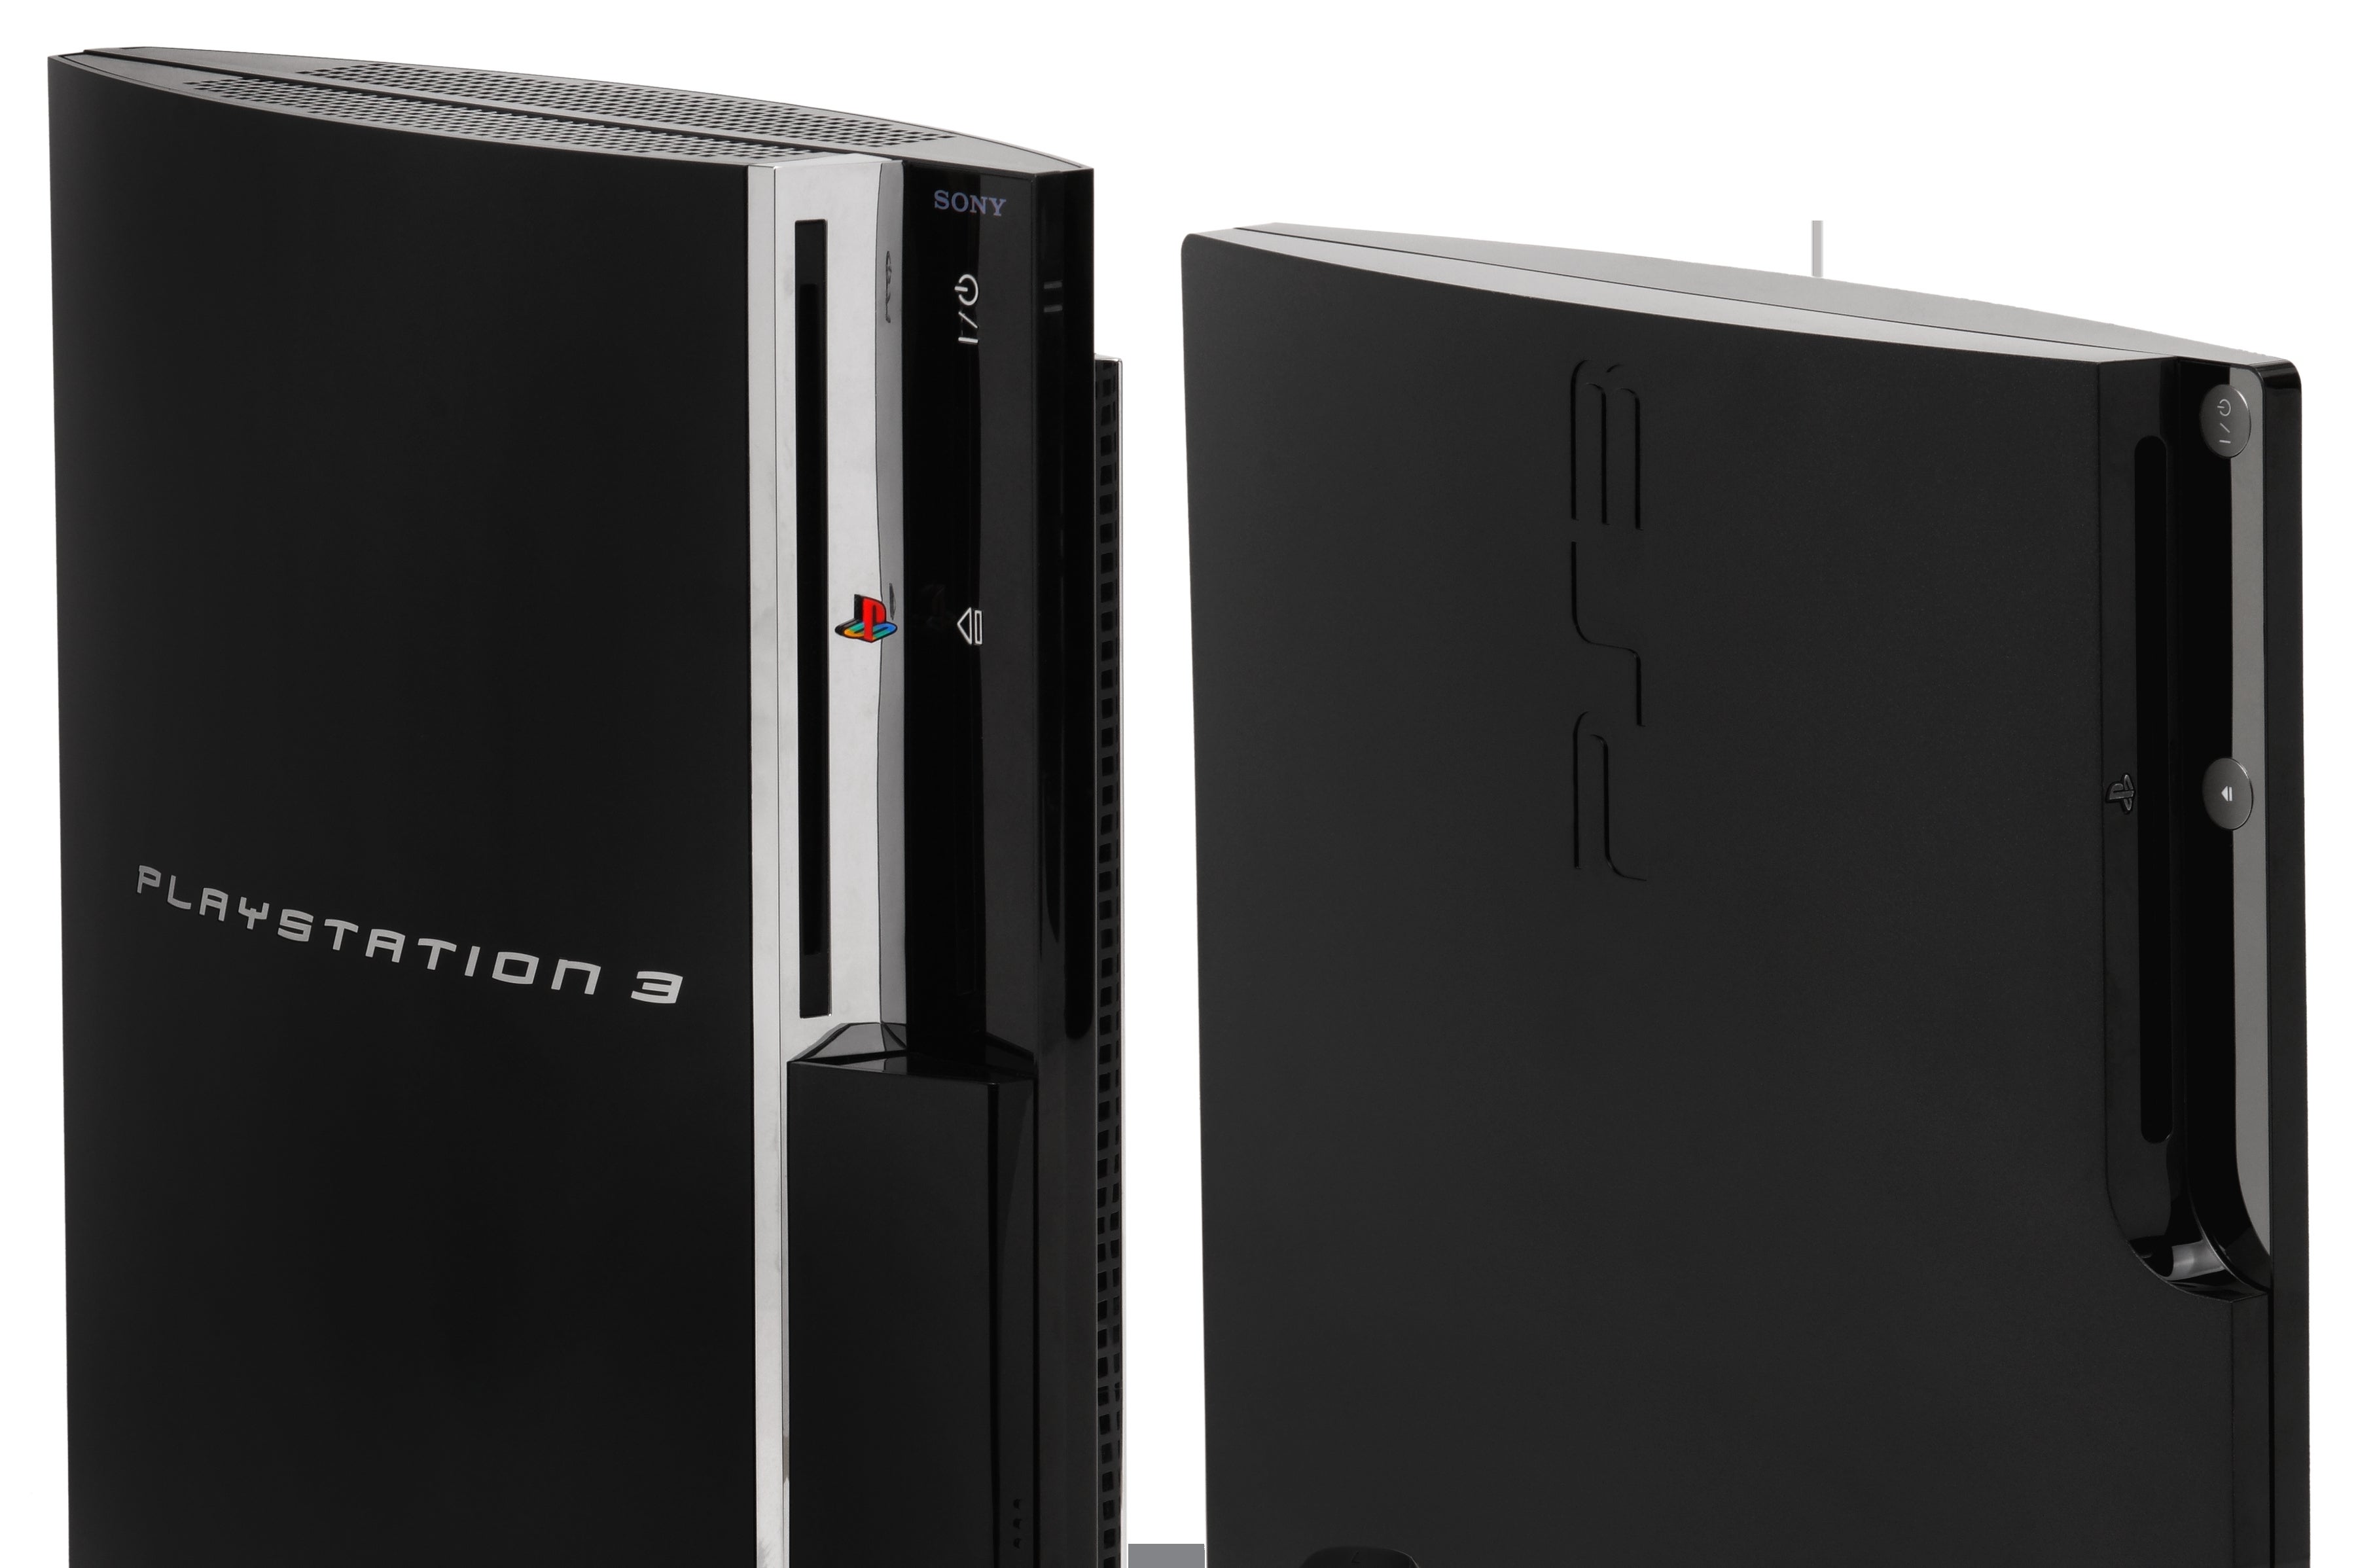 Obrazki dla Sprzedaż PlayStation 3 osiągnęła poziom 80 milionów egzemplarzy